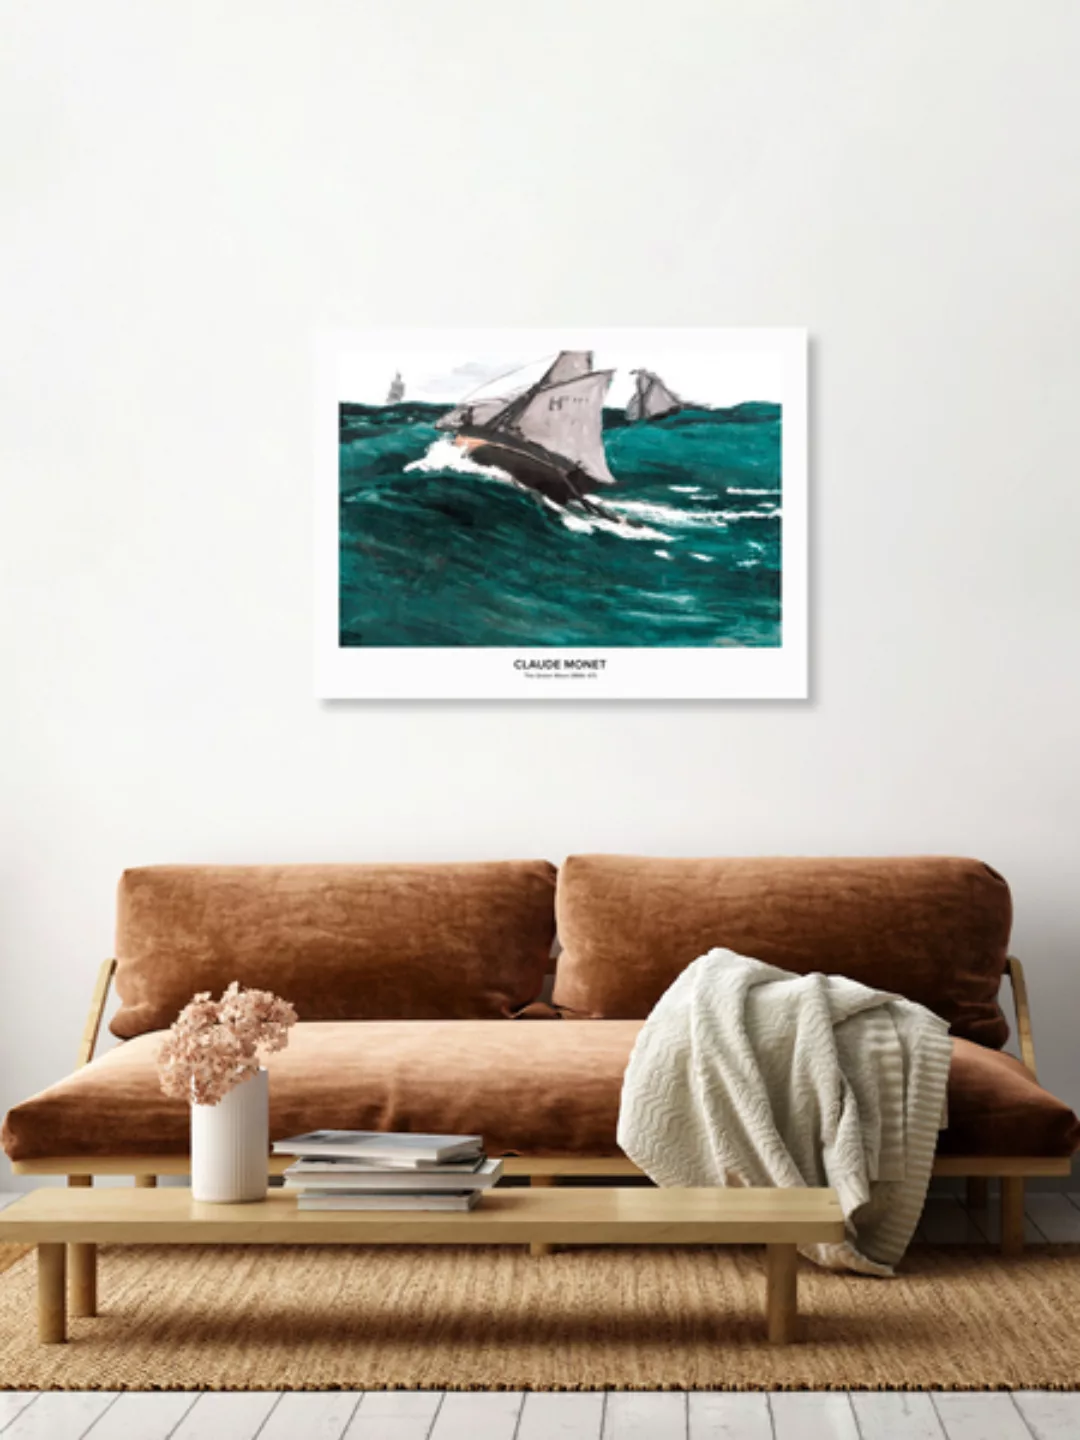 Poster / Leinwandbild - Claude Monet: Die Grüne Welle - Ausstellungsposter günstig online kaufen